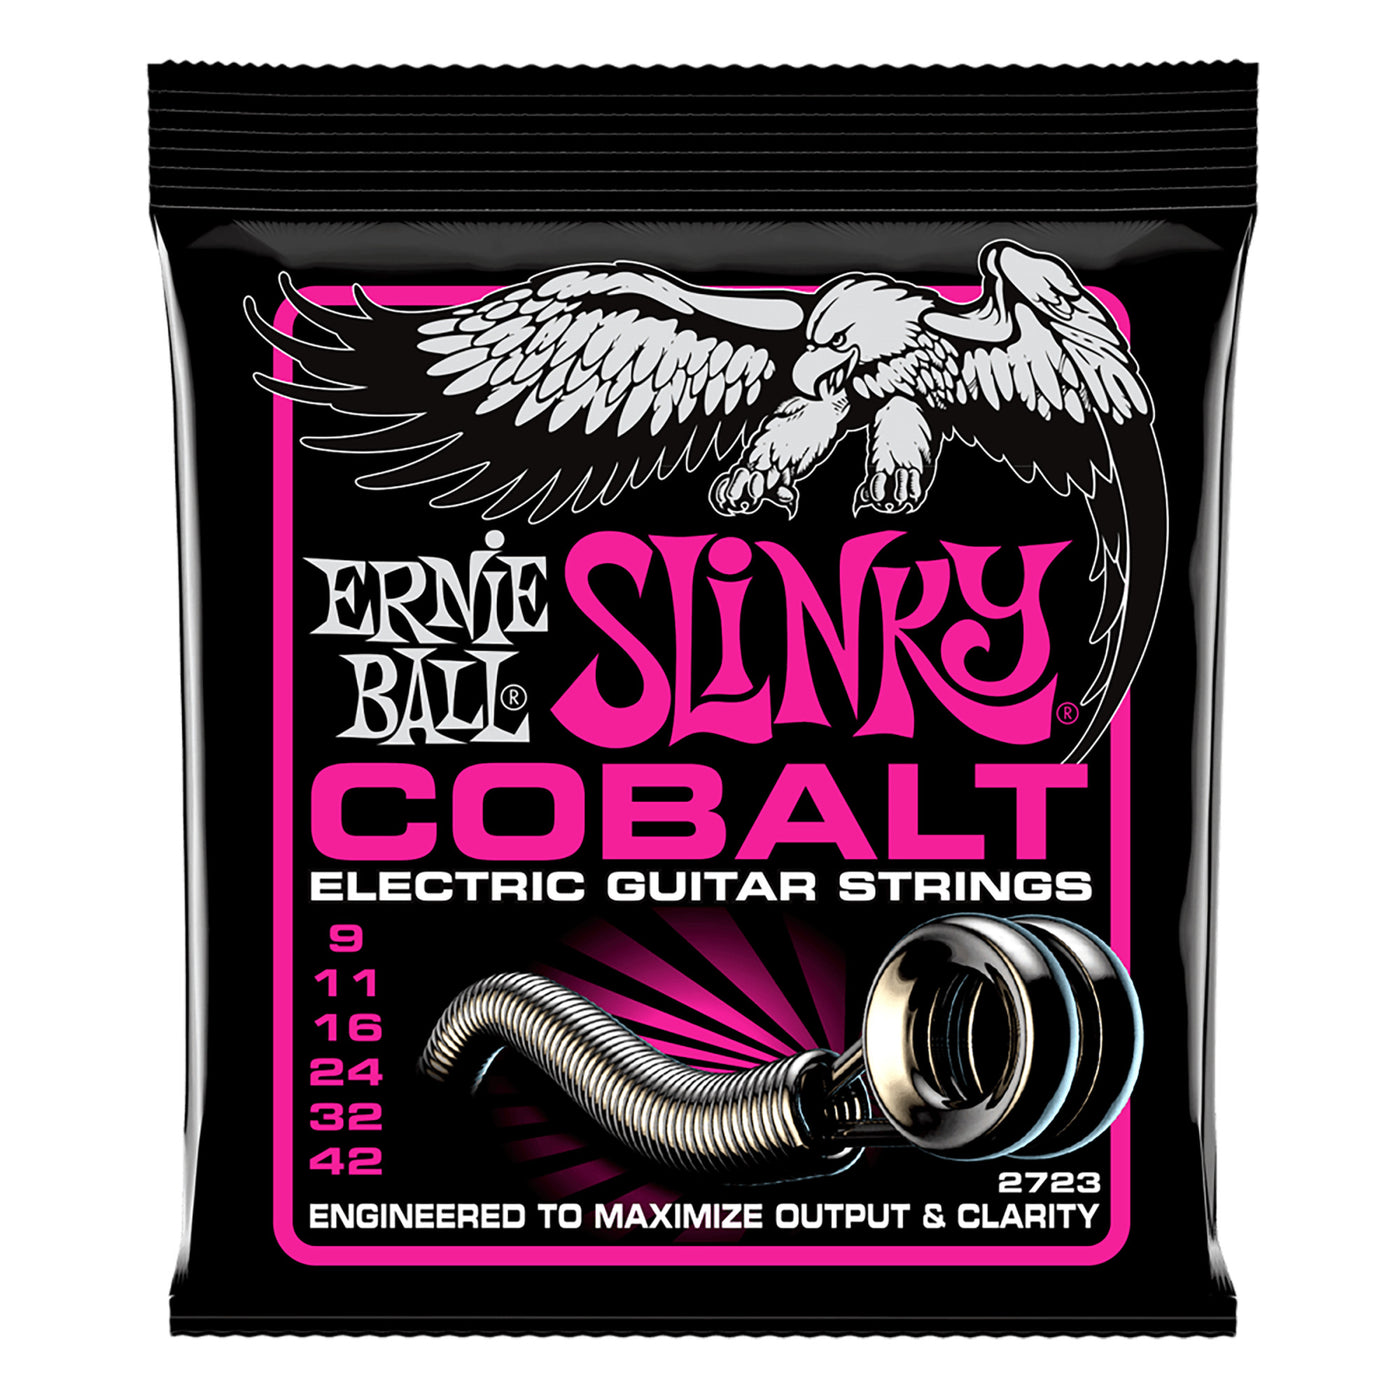 Ernie Ball Super Slinky Cobalt Electric Guitar Strings, 9-42 Gauge- 6 Strings